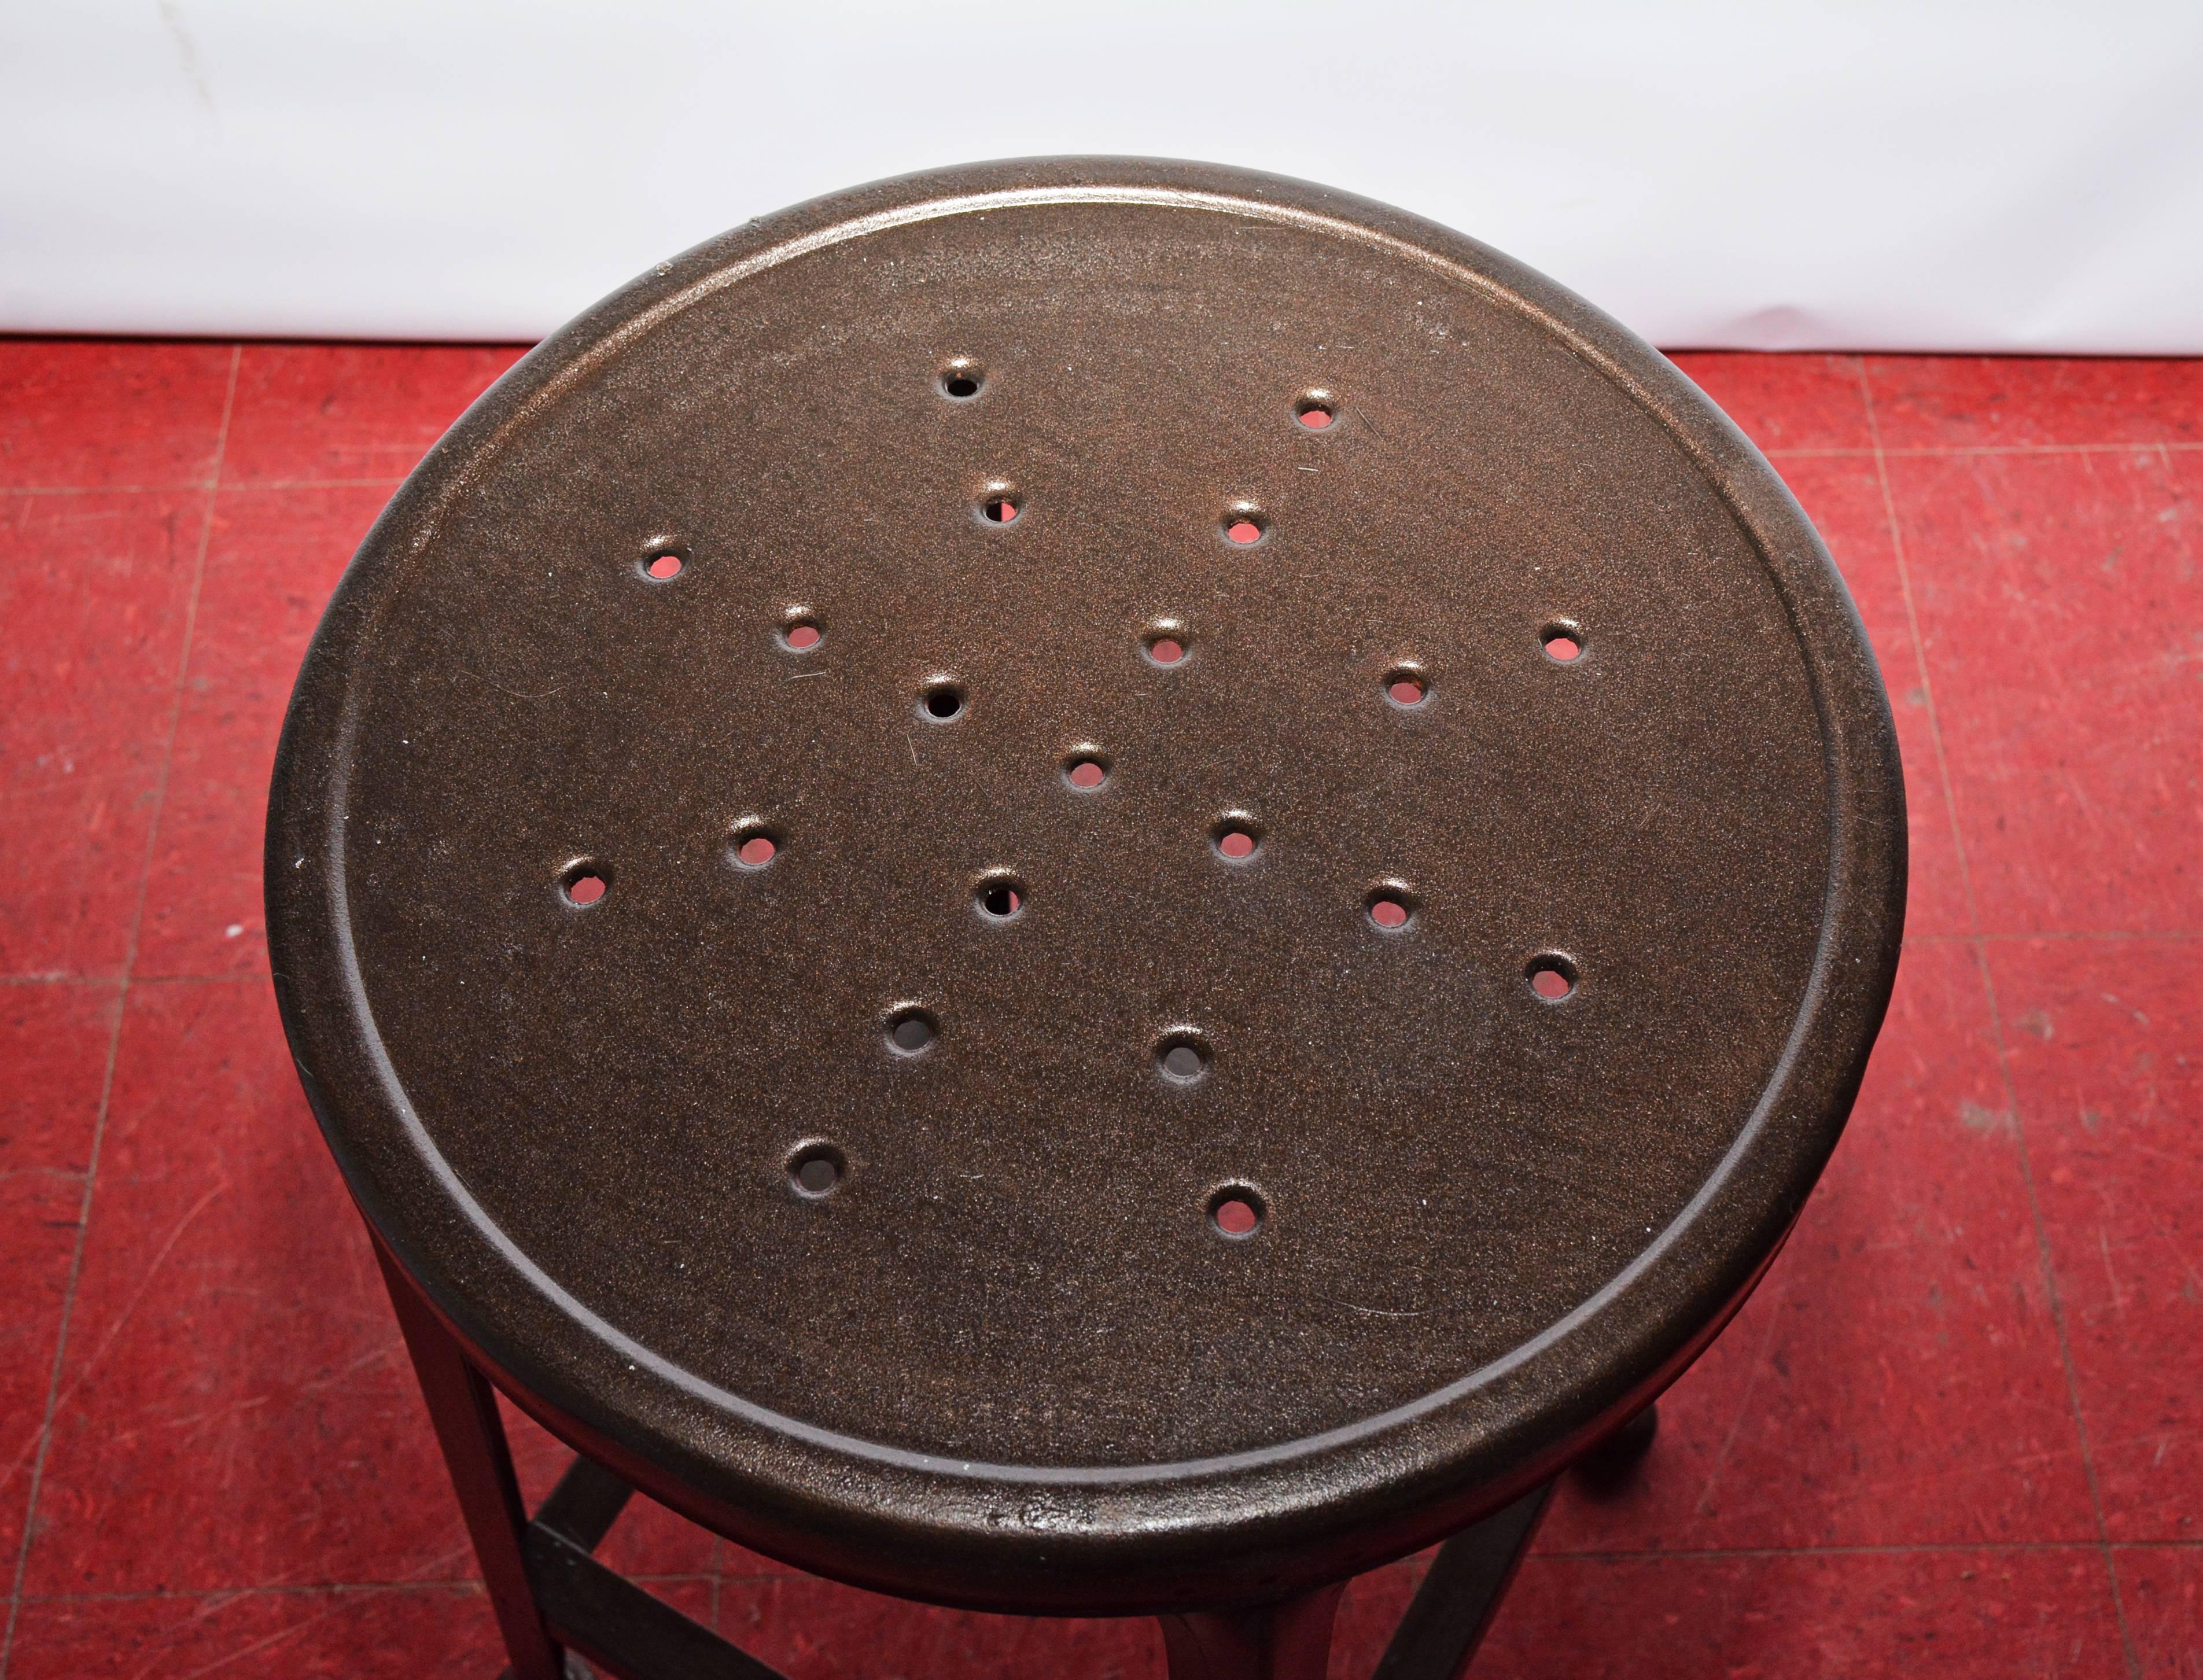 Le tabouret en fer est doté d'une assise et de pieds perforés avec des brancards et des pieds rembourrés.

Mesures : Diamètre du siège 14,50.